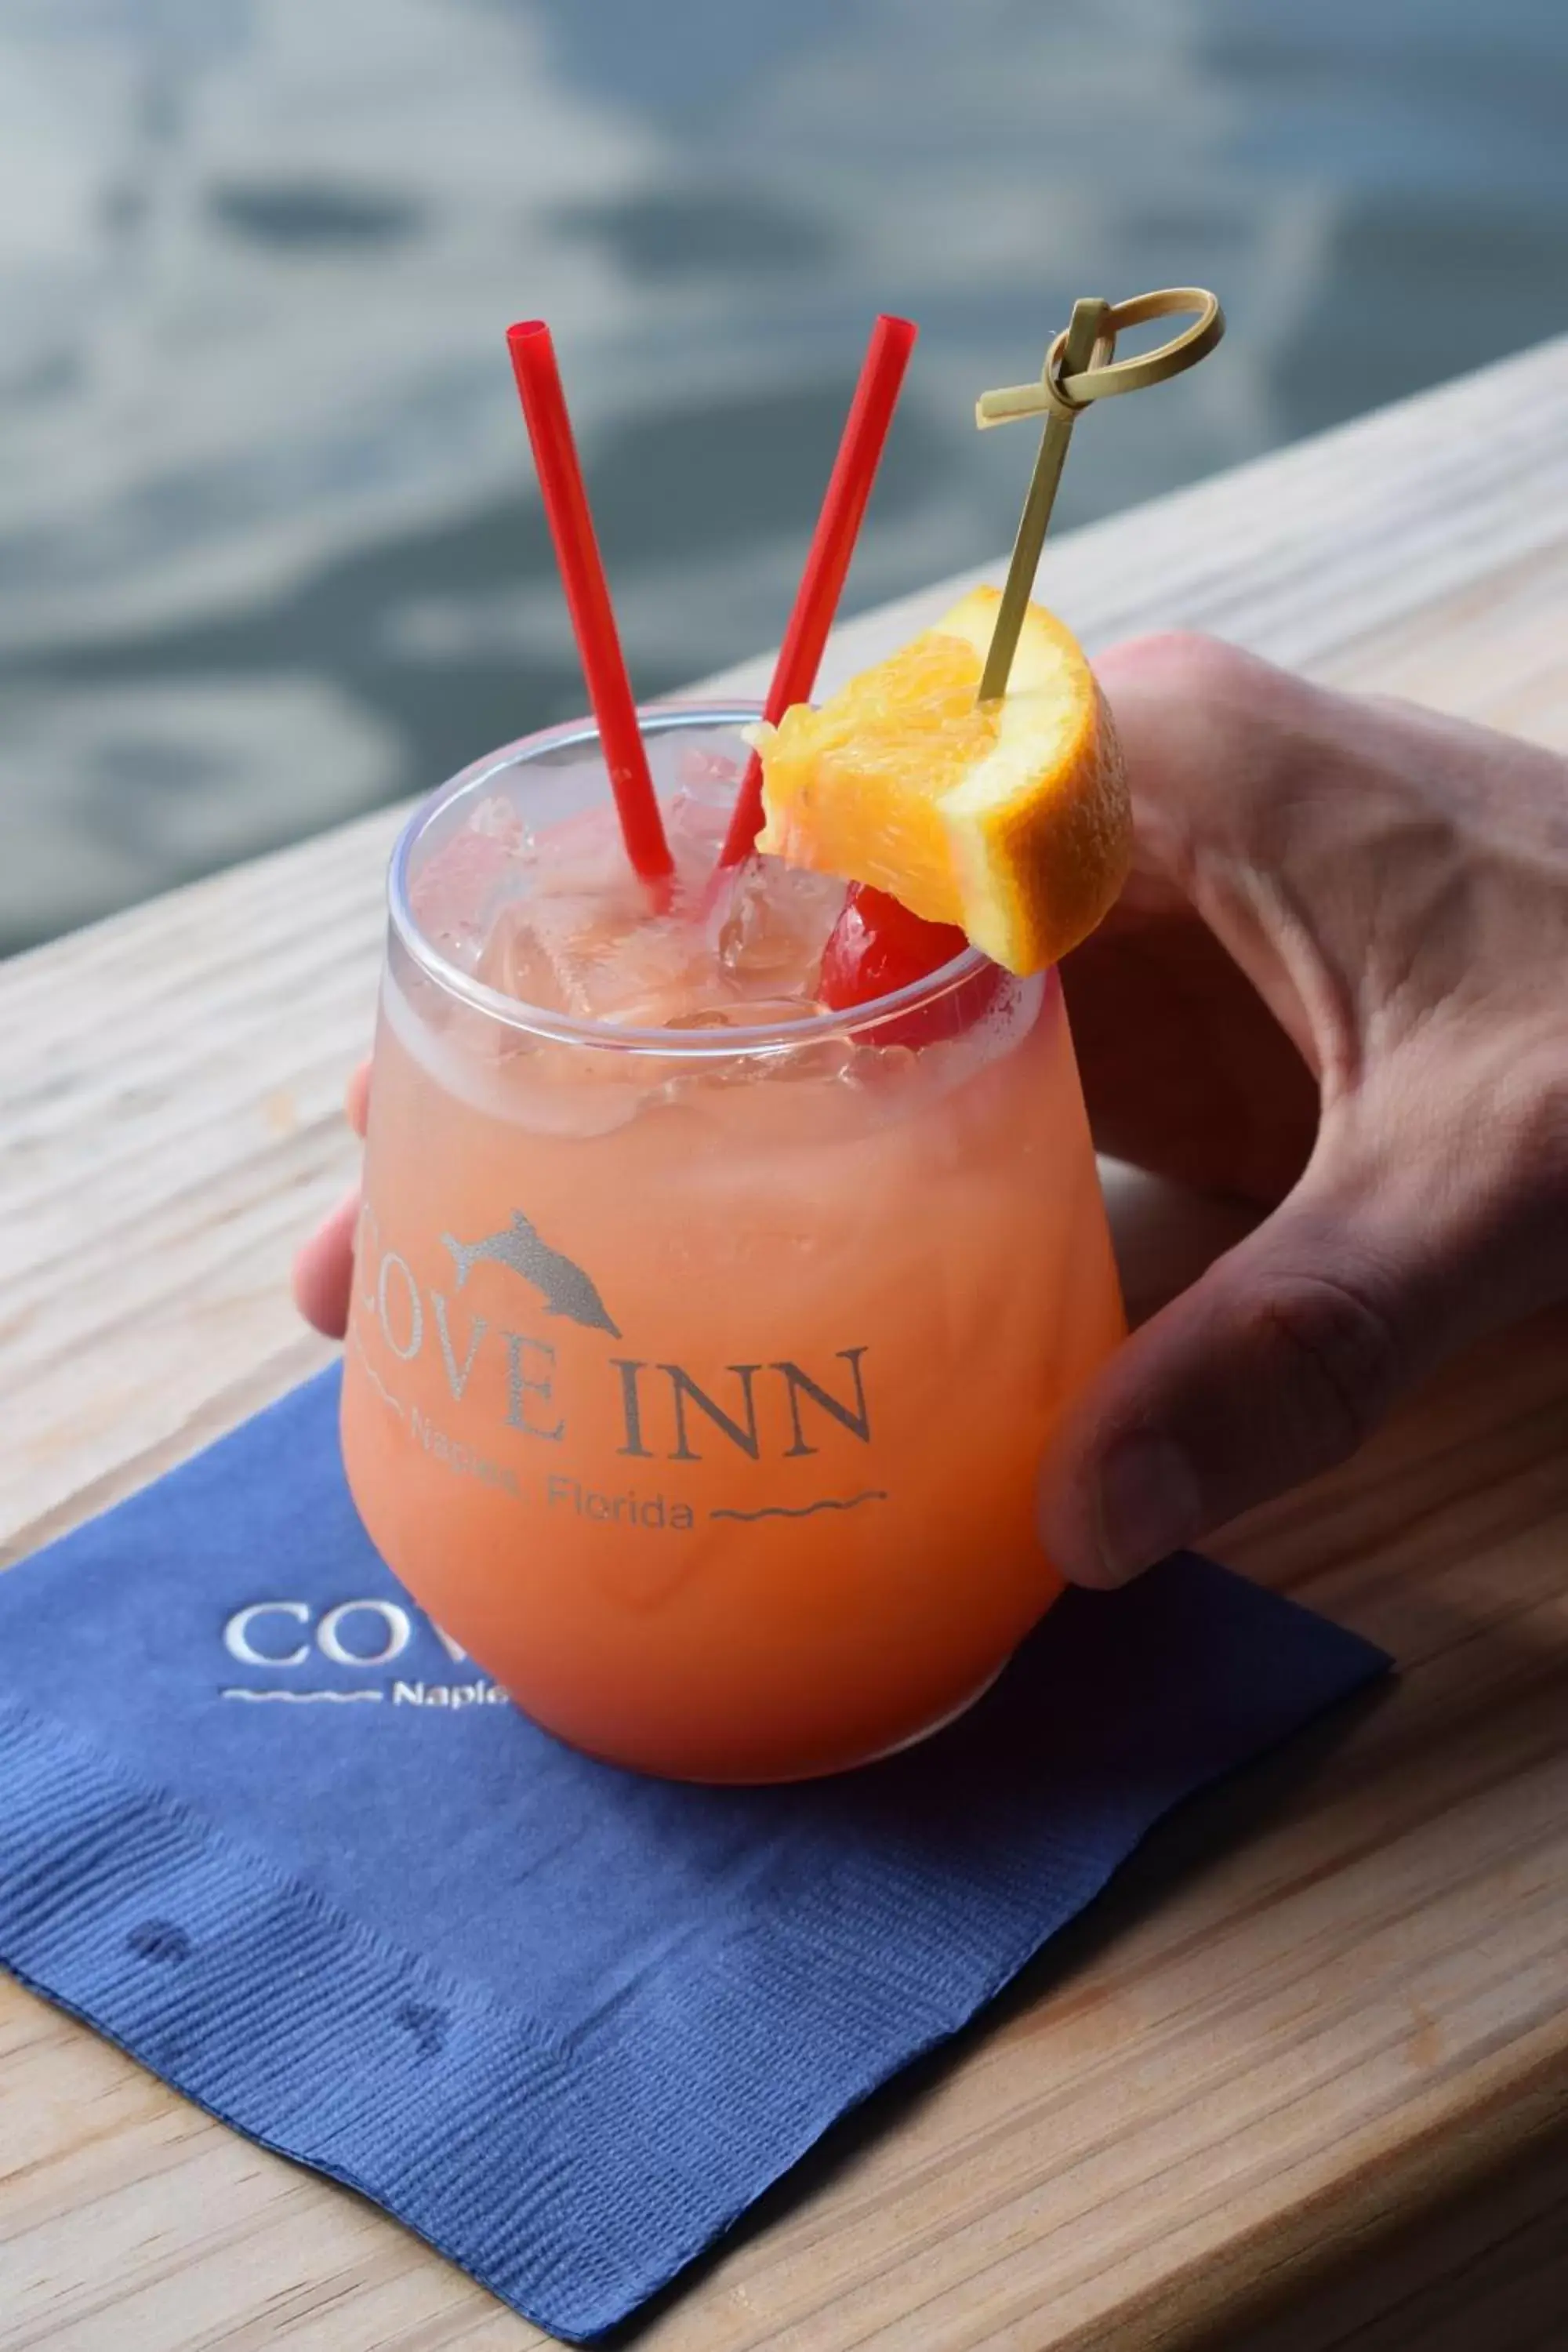 Drinks in Cove Inn on Naples Bay